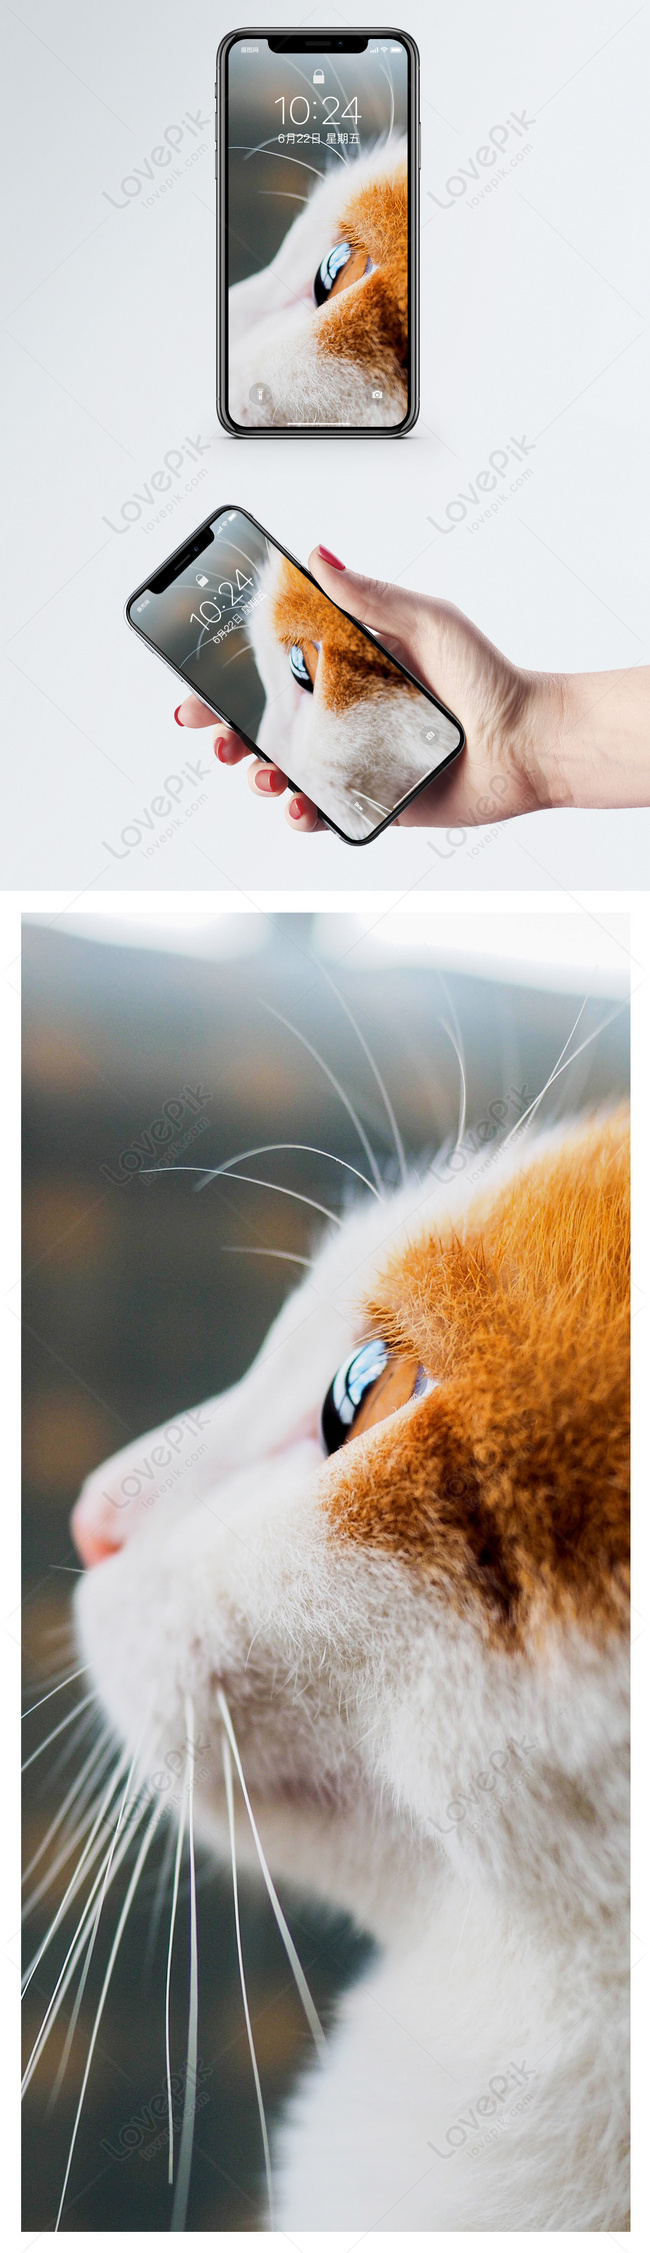 Hình nền điện thoại bên con mèo Để tạo cho điện thoại của bạn vẻ ngoài mới lạ và độc đáo, bạn có thể sử dụng bức tranh nền điện thoại với hình ảnh con mèo đáng yêu. Tận hưởng niềm vui nhìn thấy mèo mỗi khi mở điện thoại của bạn. Bạn sẽ không muốn bỏ qua bức tranh nền với con mèo đáng yêu này.